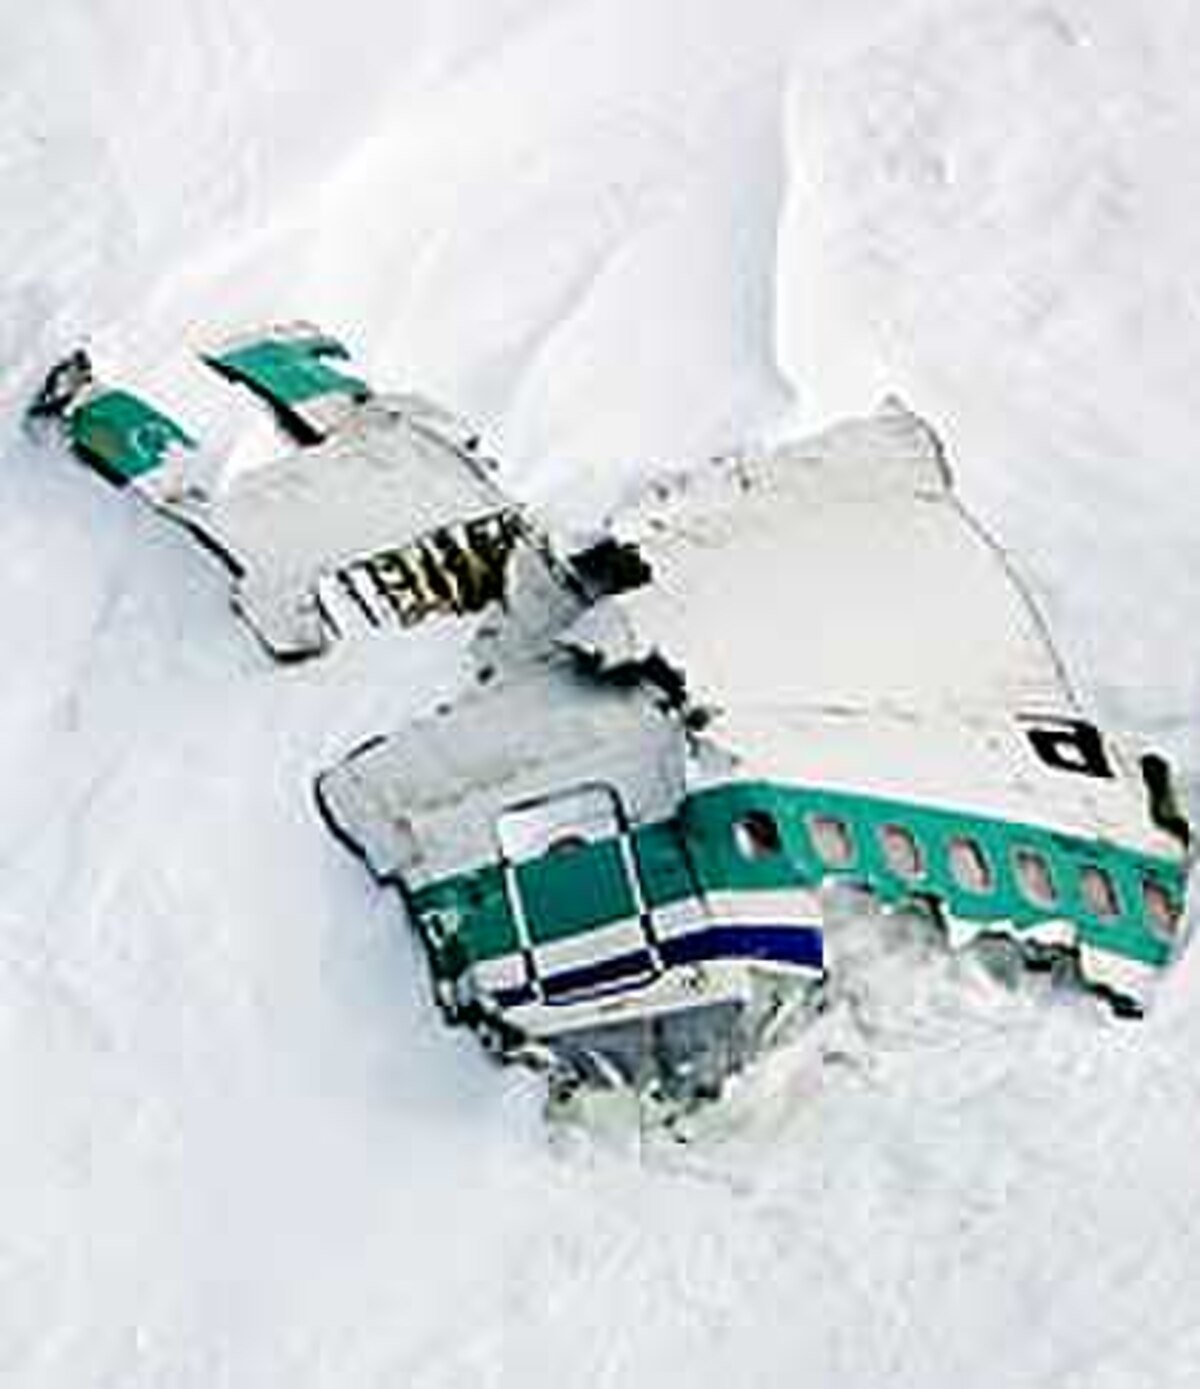 Restes de la carlingue du vol 901 d'Air New Zealand sur les flancs du mont Erebus en Antarctique.